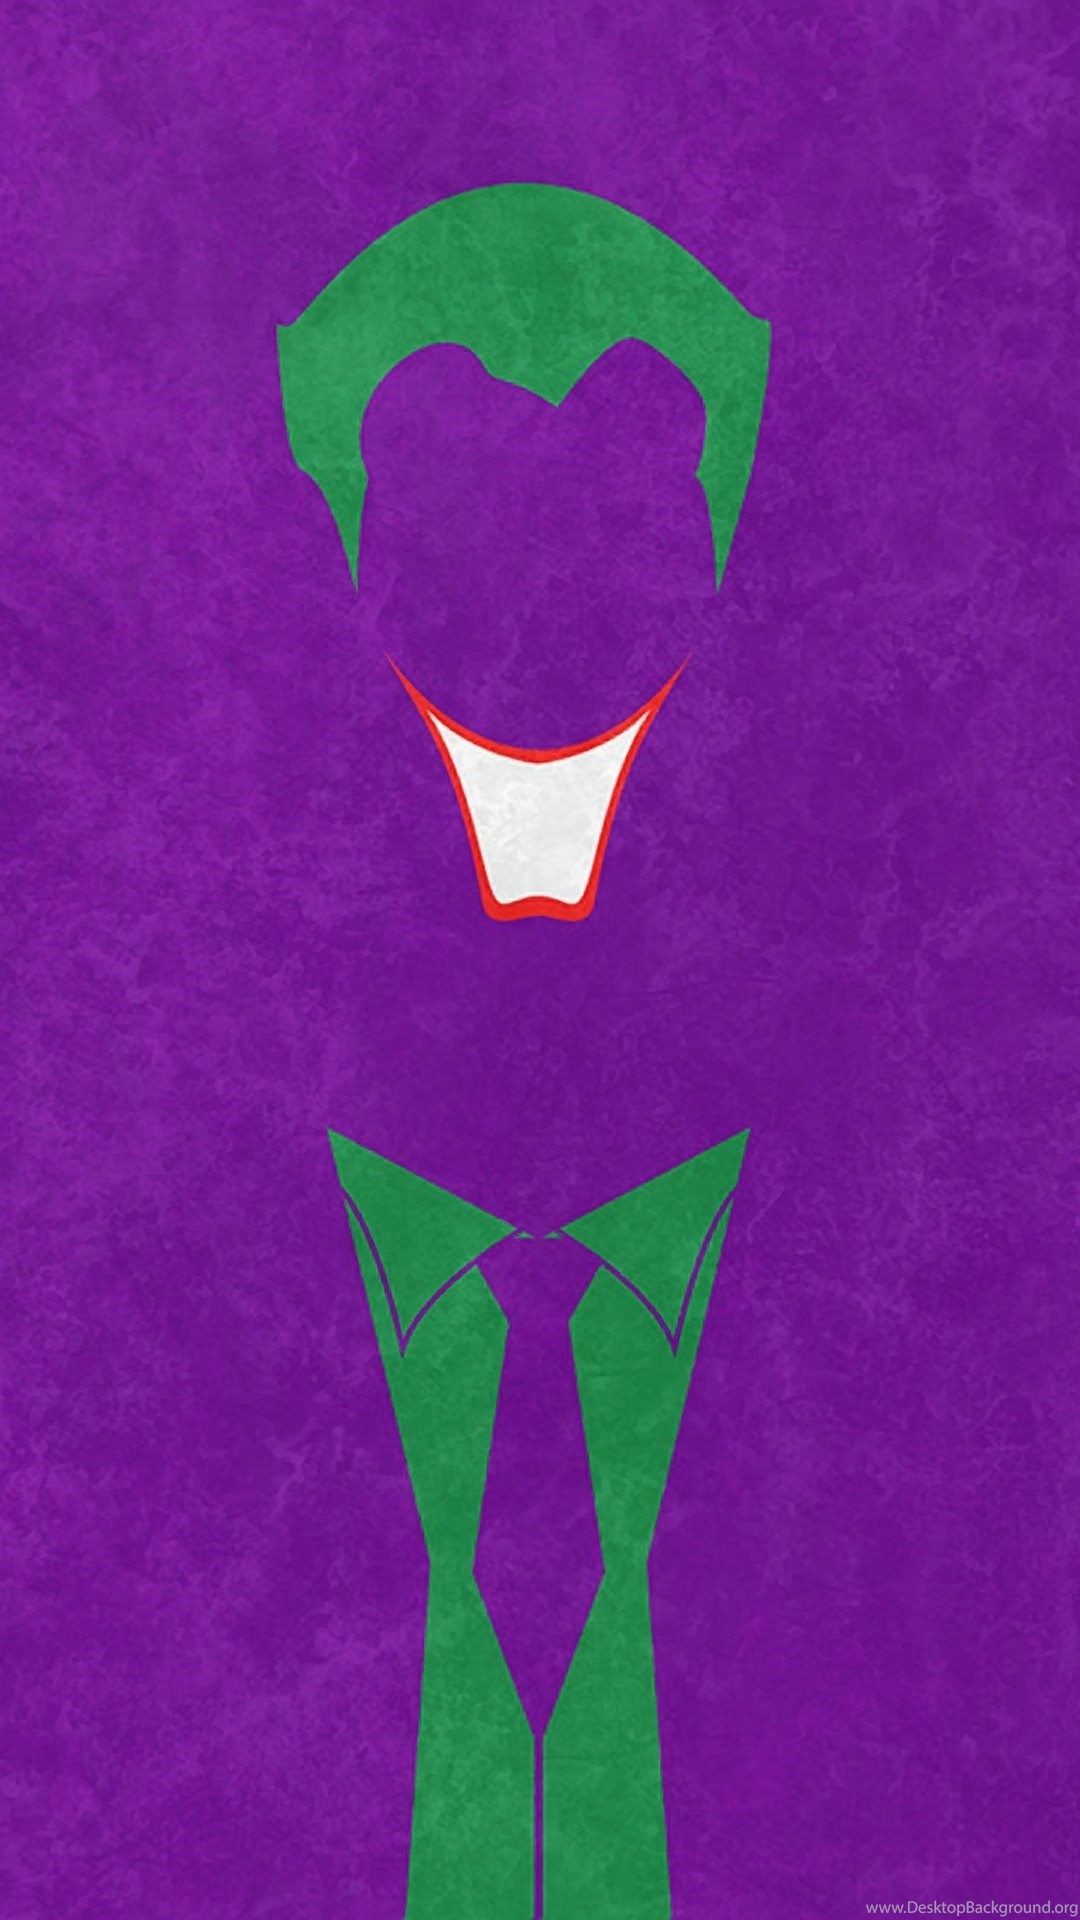 Joker And Harley Quinn Â¤ 4k Hd Desktop Wallpaper - Cool Joker Wallpaper Iphone X - HD Wallpaper 